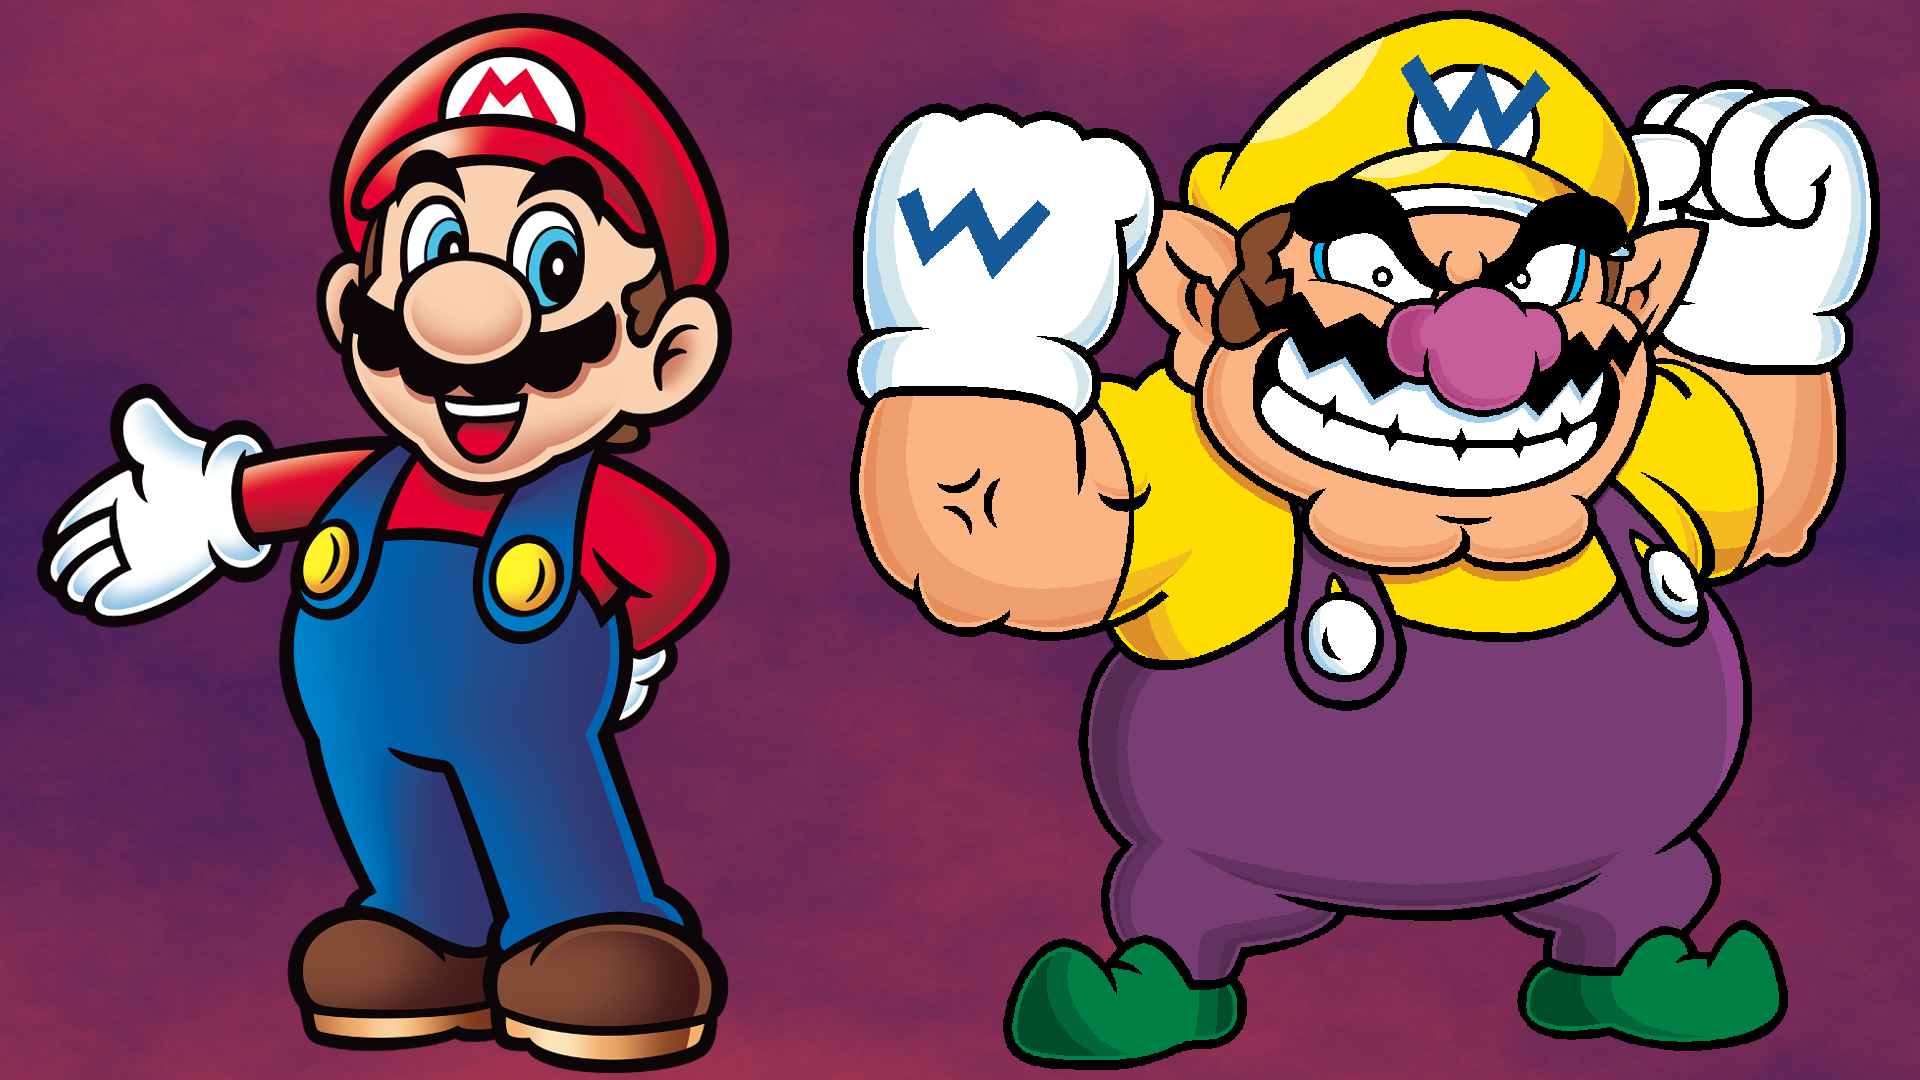 Mario to Wario: Mario & Wario